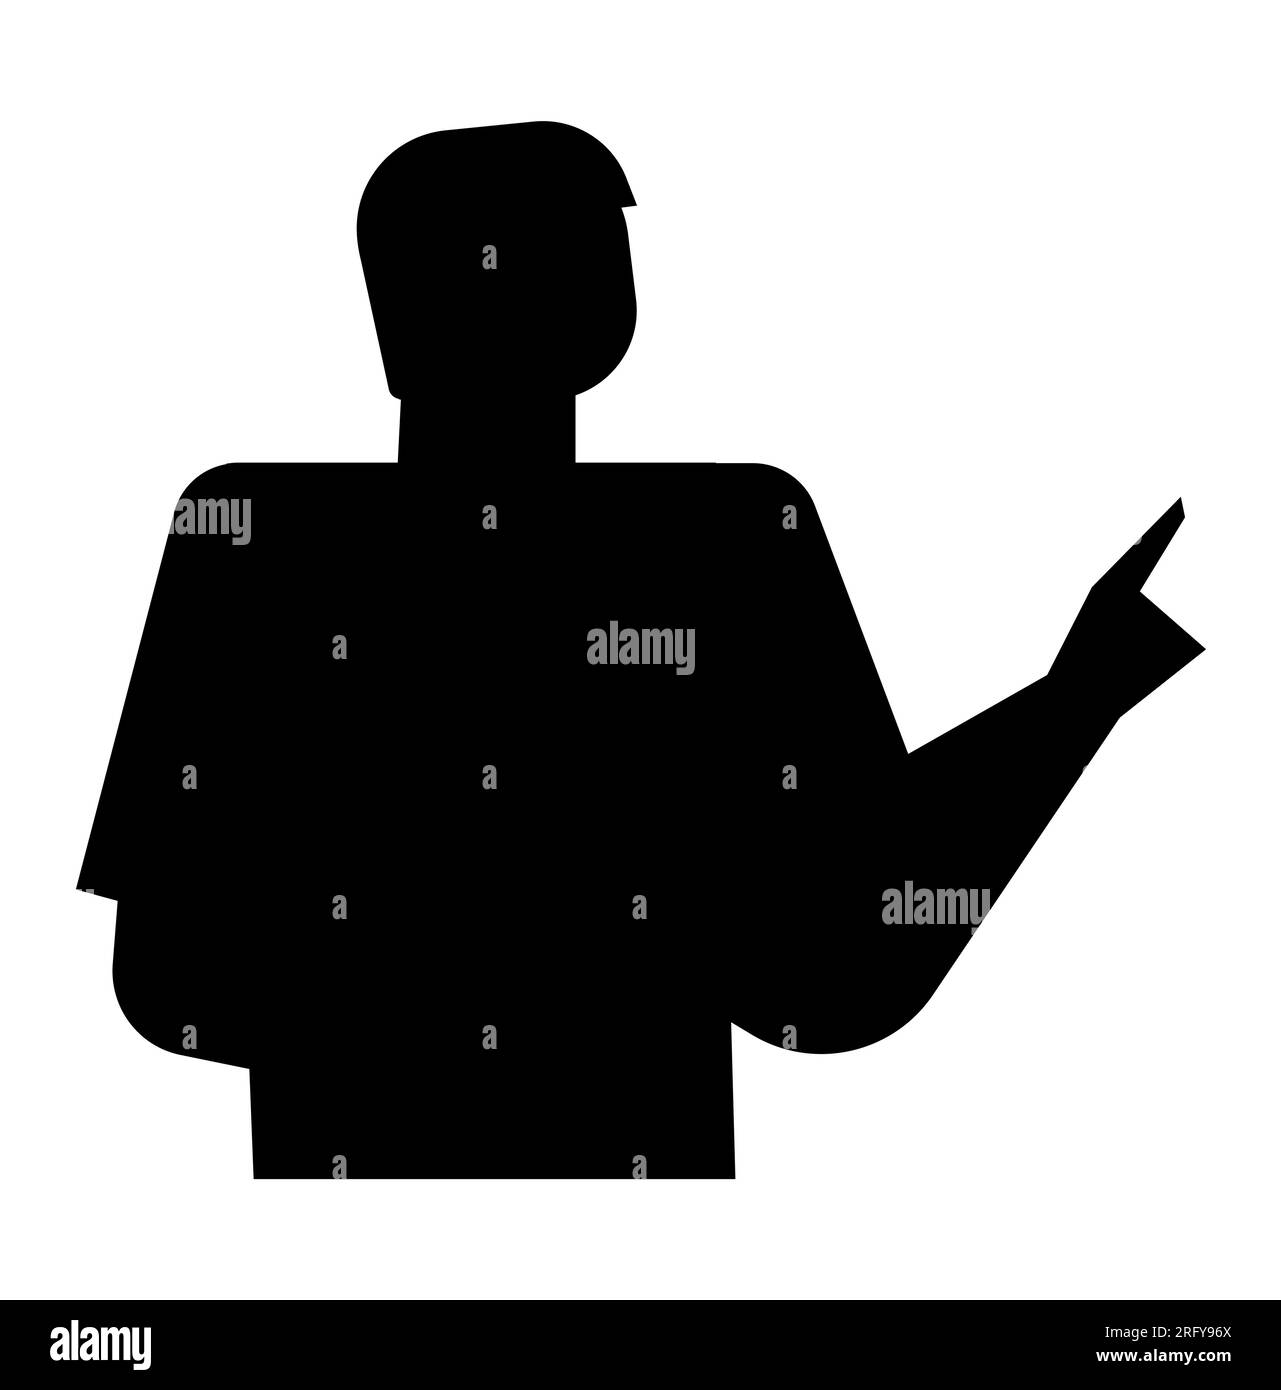 Silhouette noire d'un homme montrant le doigt tout en donnant un discours, vecteur isolé sur fond blanc Illustration de Vecteur